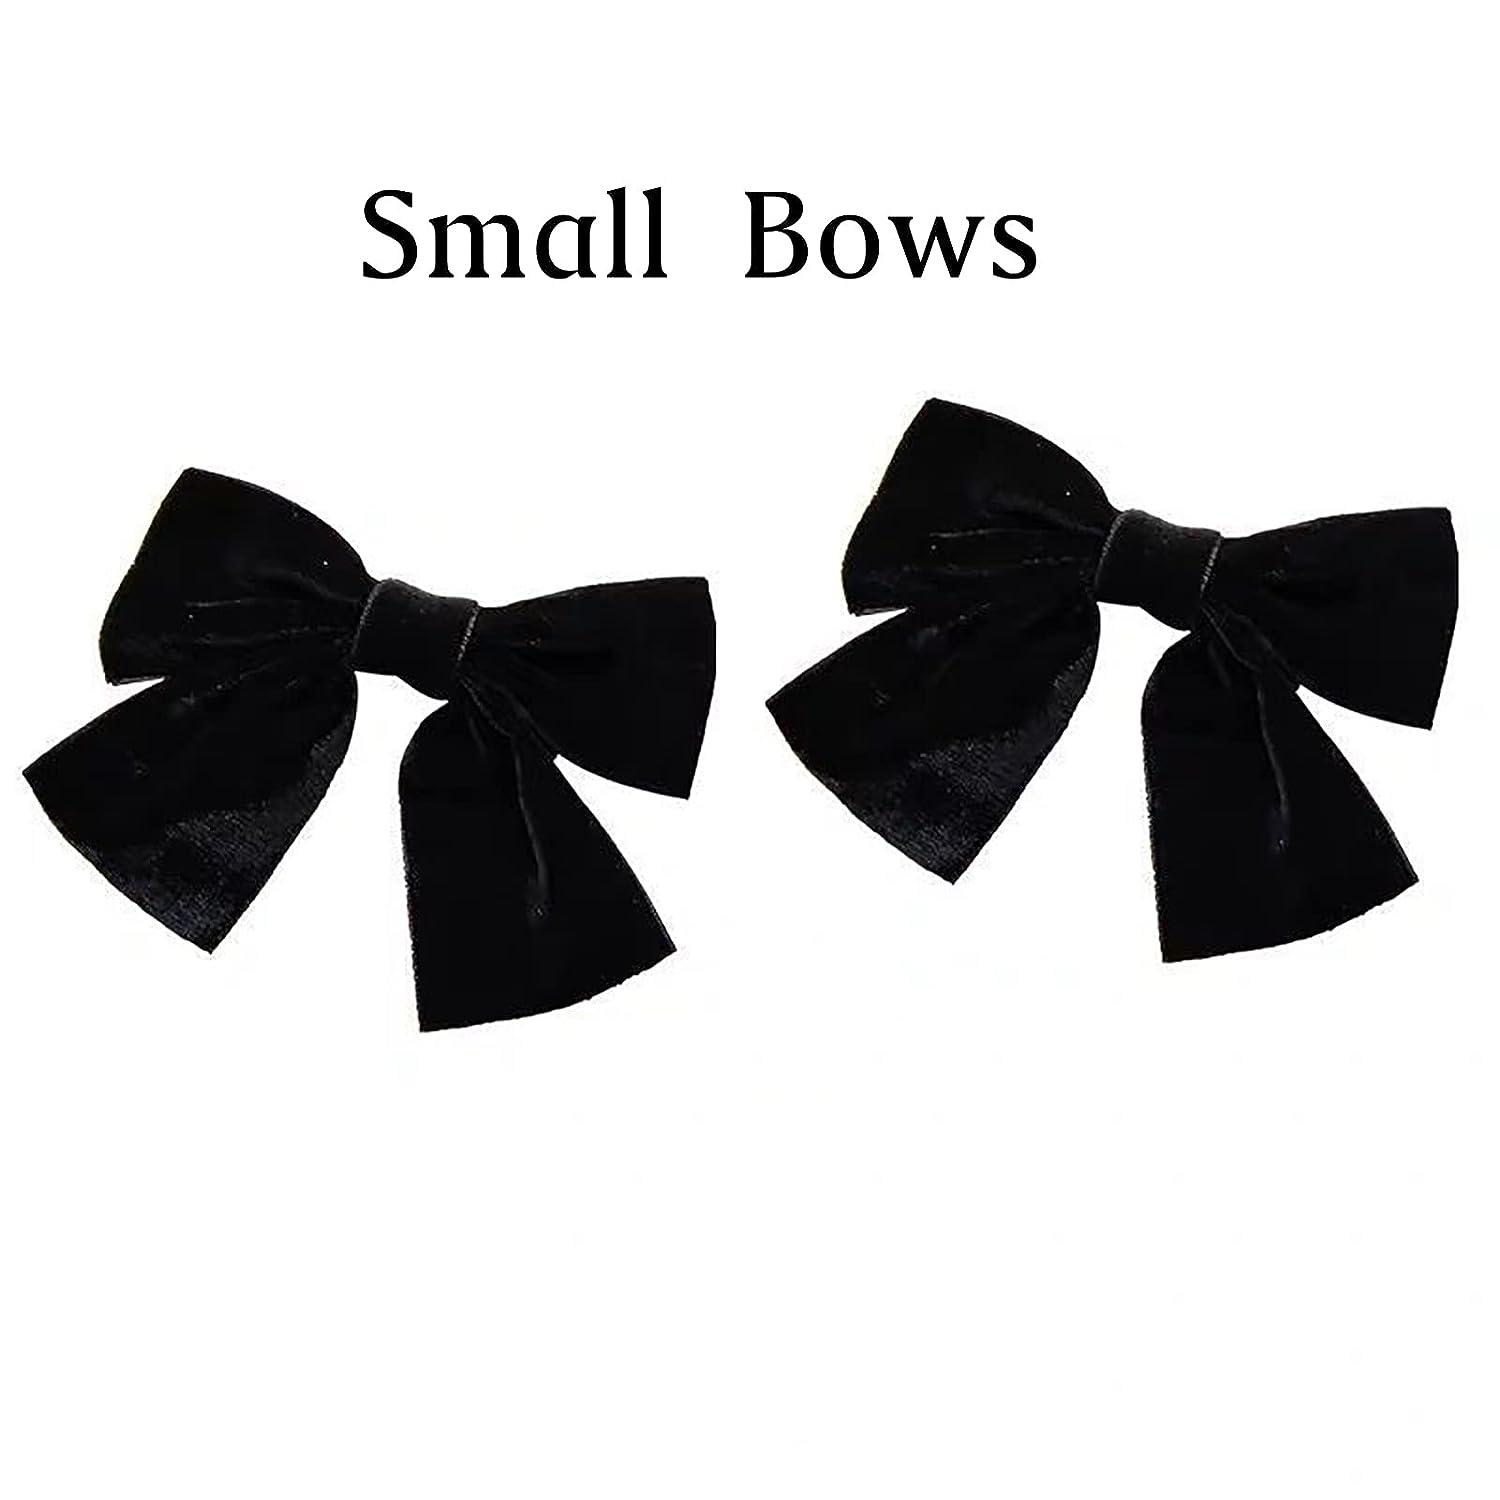  2Pcs Black Hair Bow, Black Ribbon Hair Bow, Long Silk Black  Bow Clip For Hair, Black Satin Hair Bow, Satin Black Hair Ribbon For  Toddlers Girls